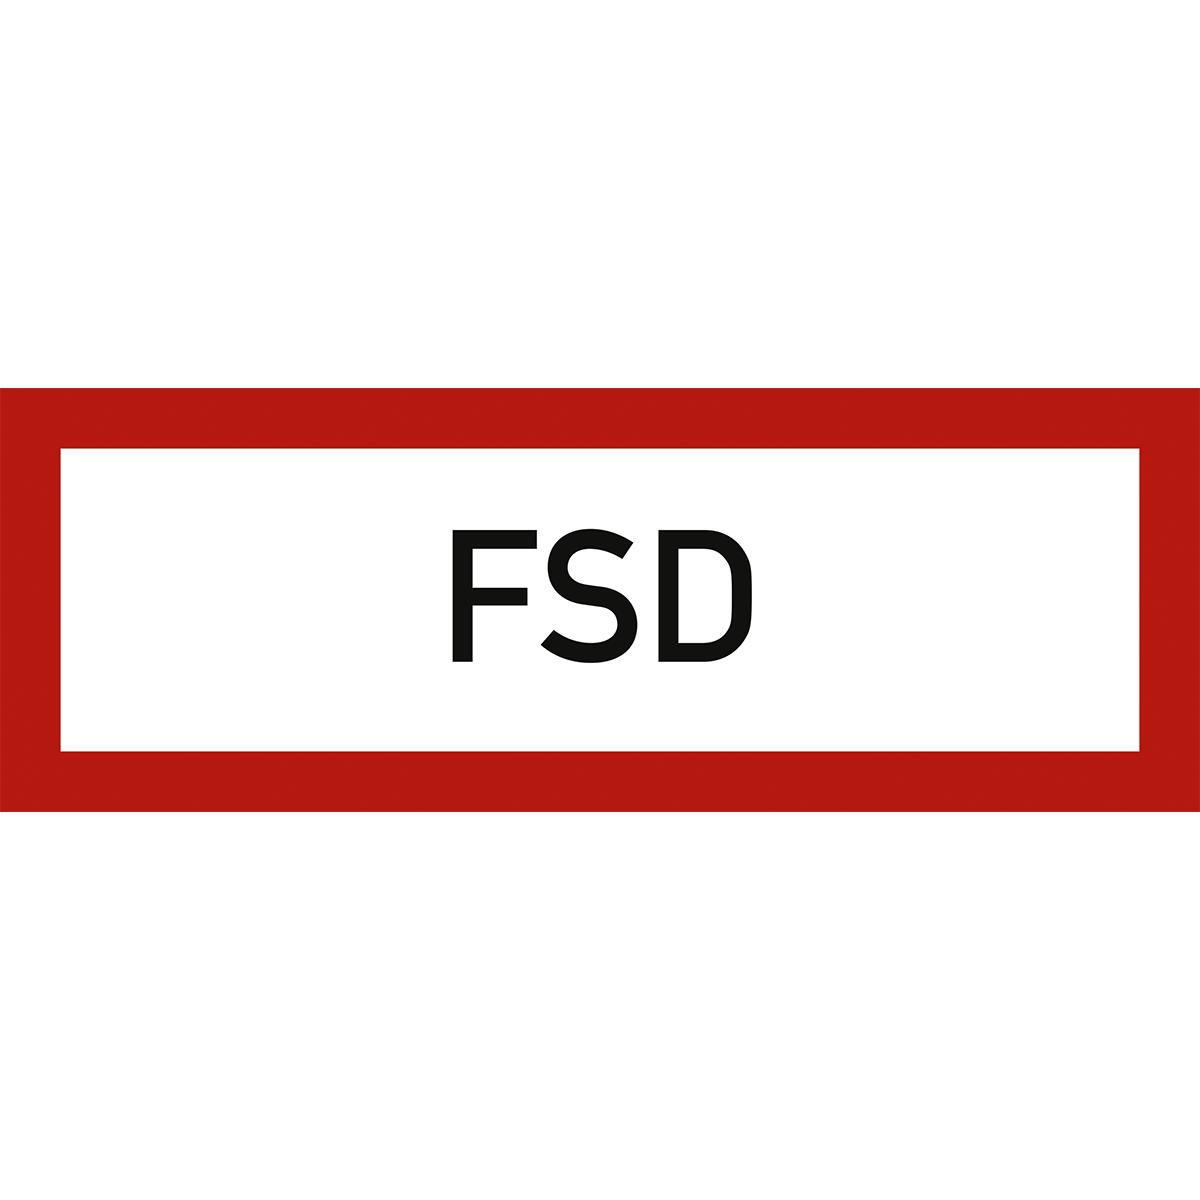 Hinweisschild mit dem Text: FSD (Feuerschlüsseldepot)